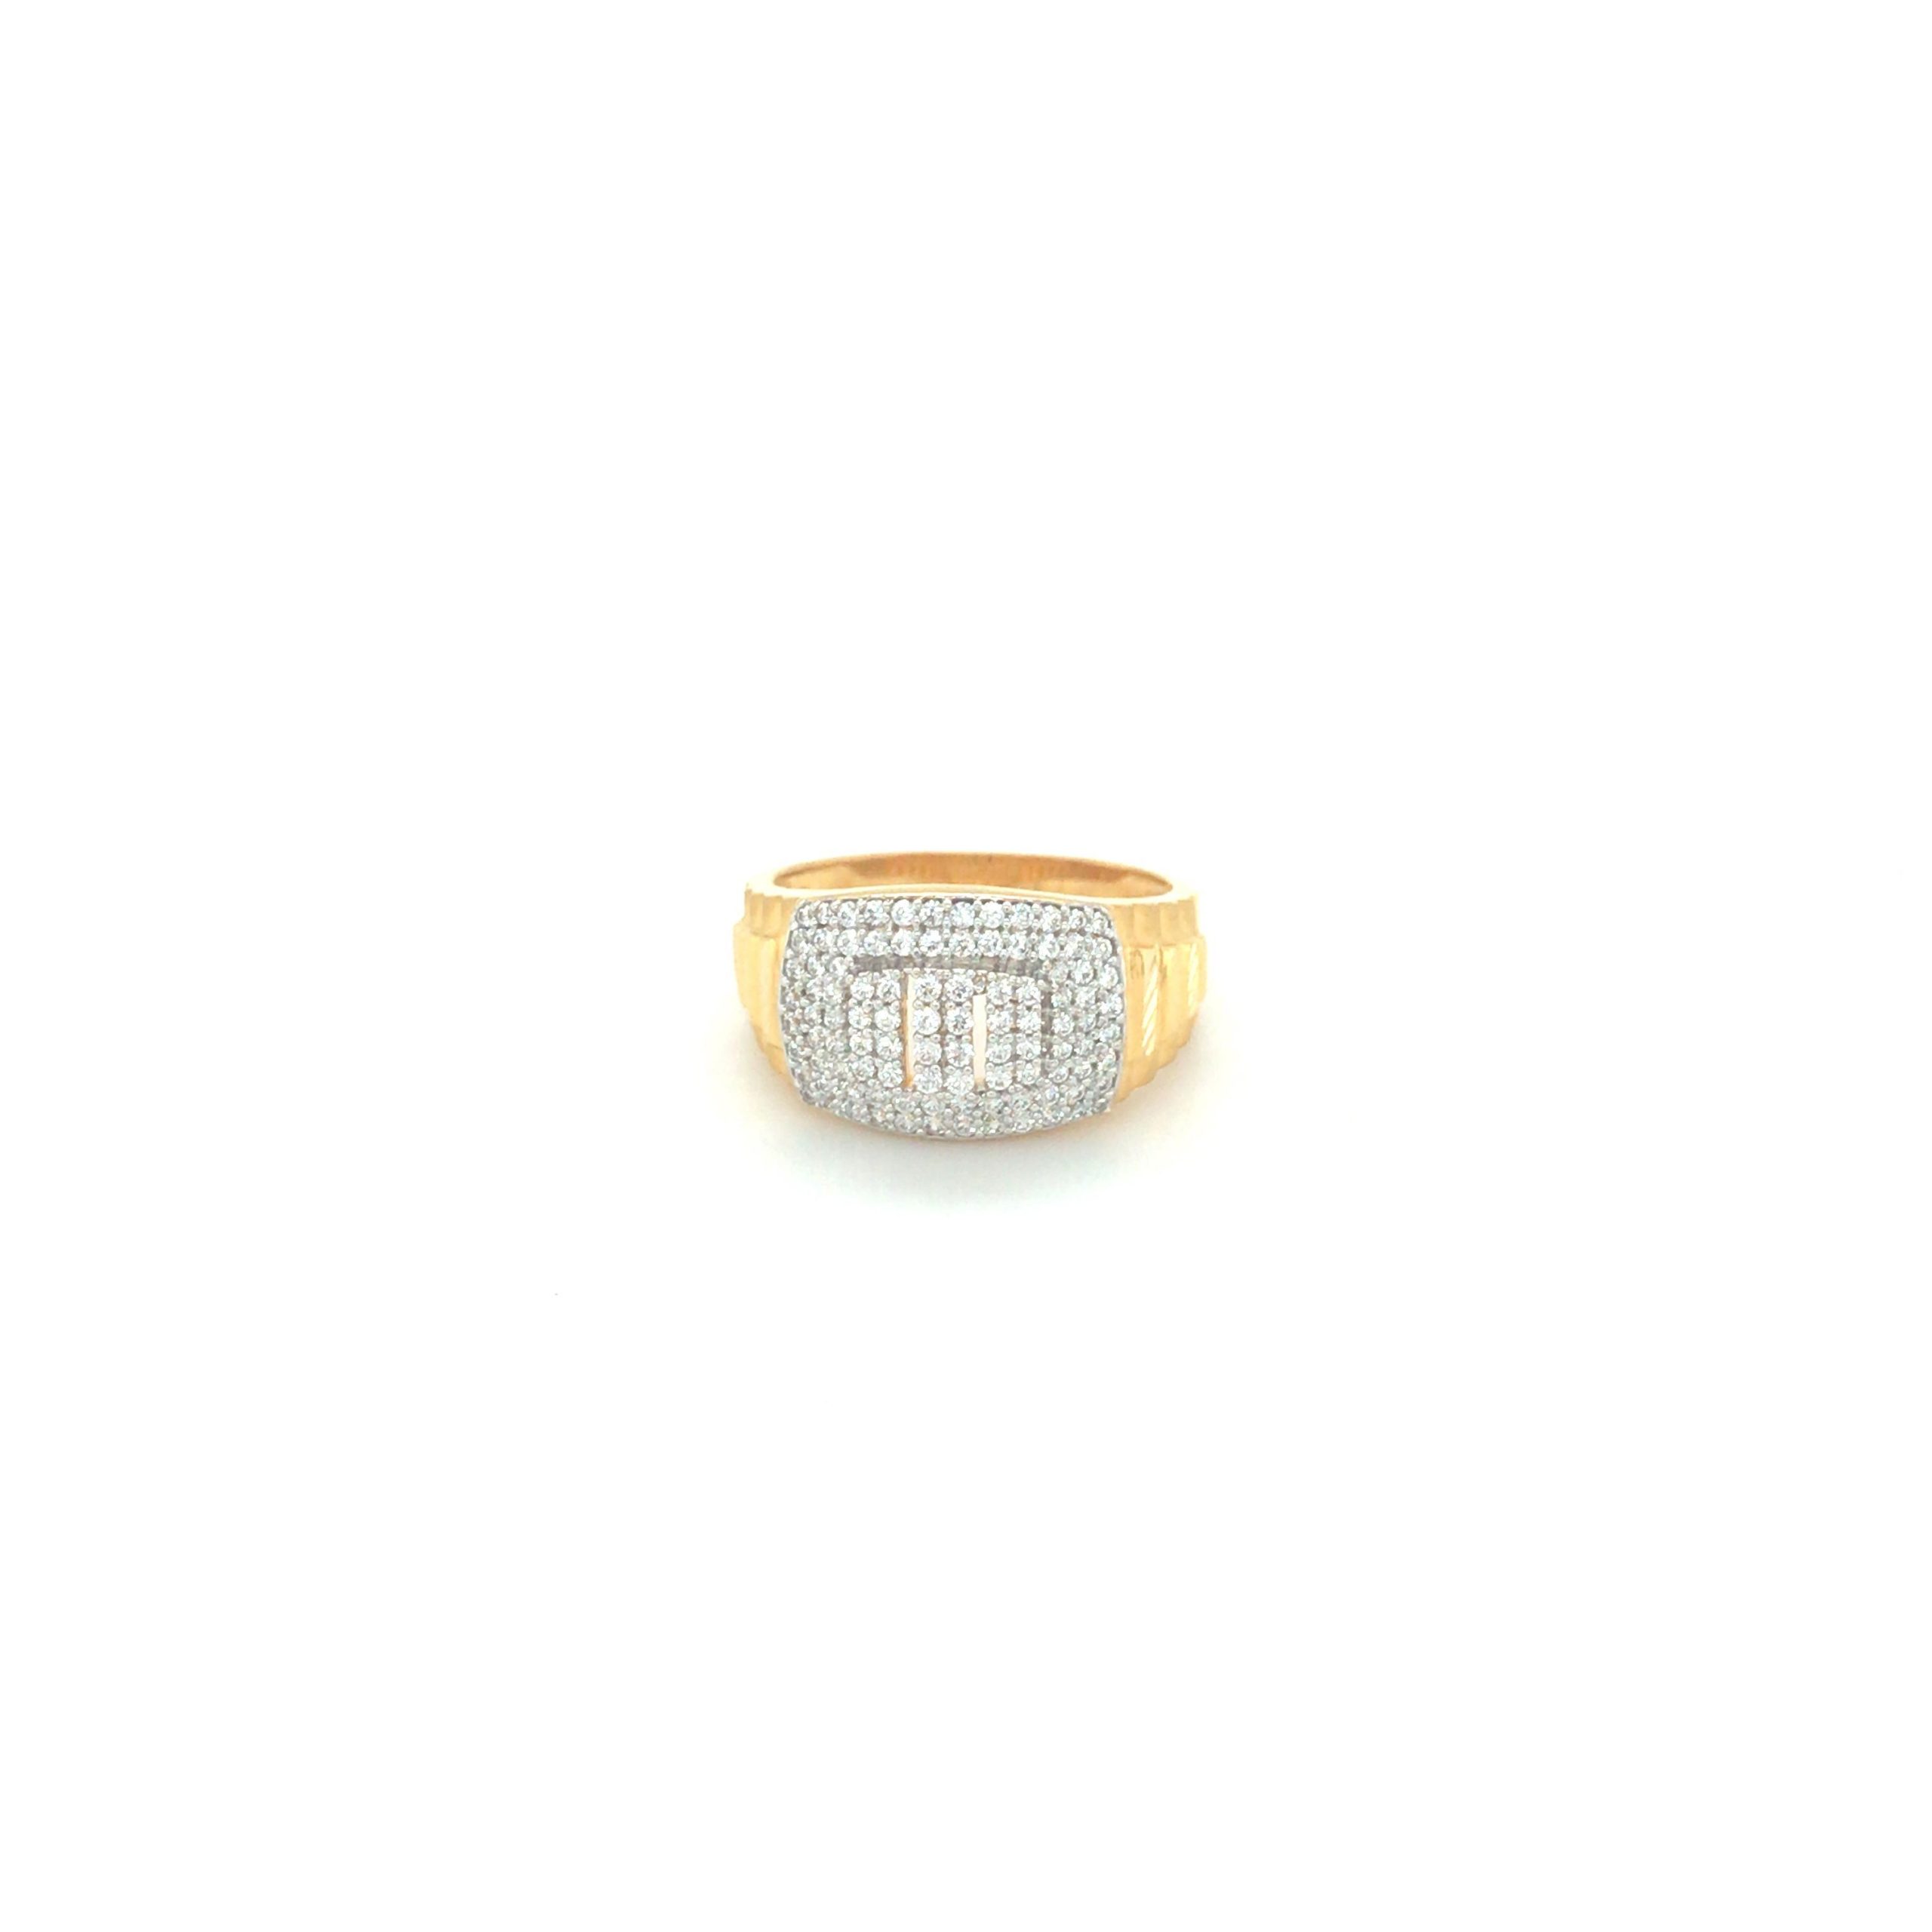 Buy Elegant Diamond Ring For Men Online